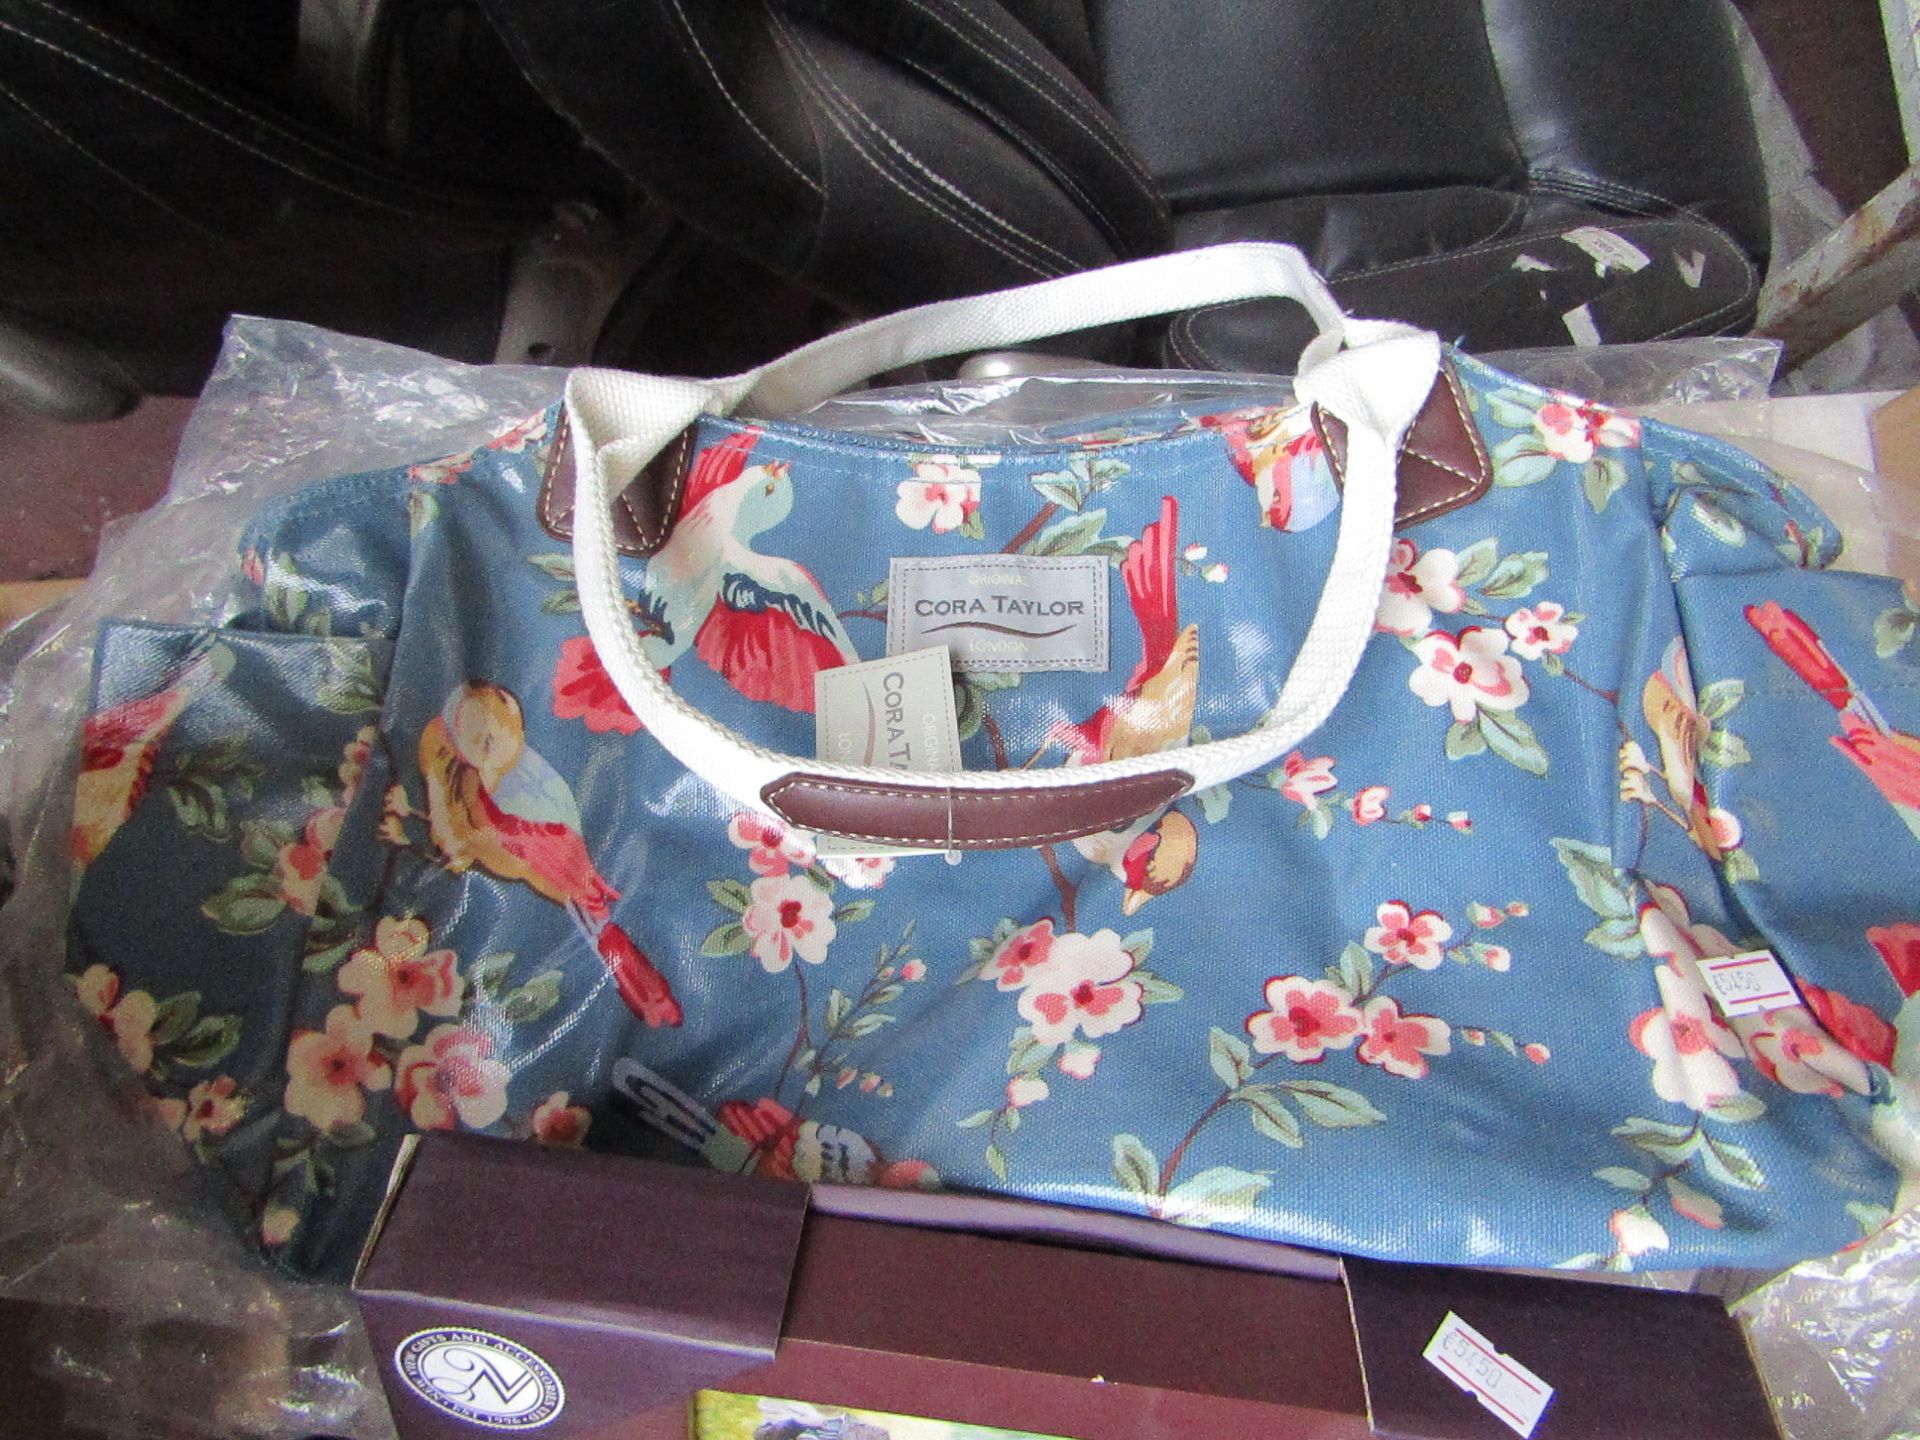 Cora Taylor London handbag, new with tag.